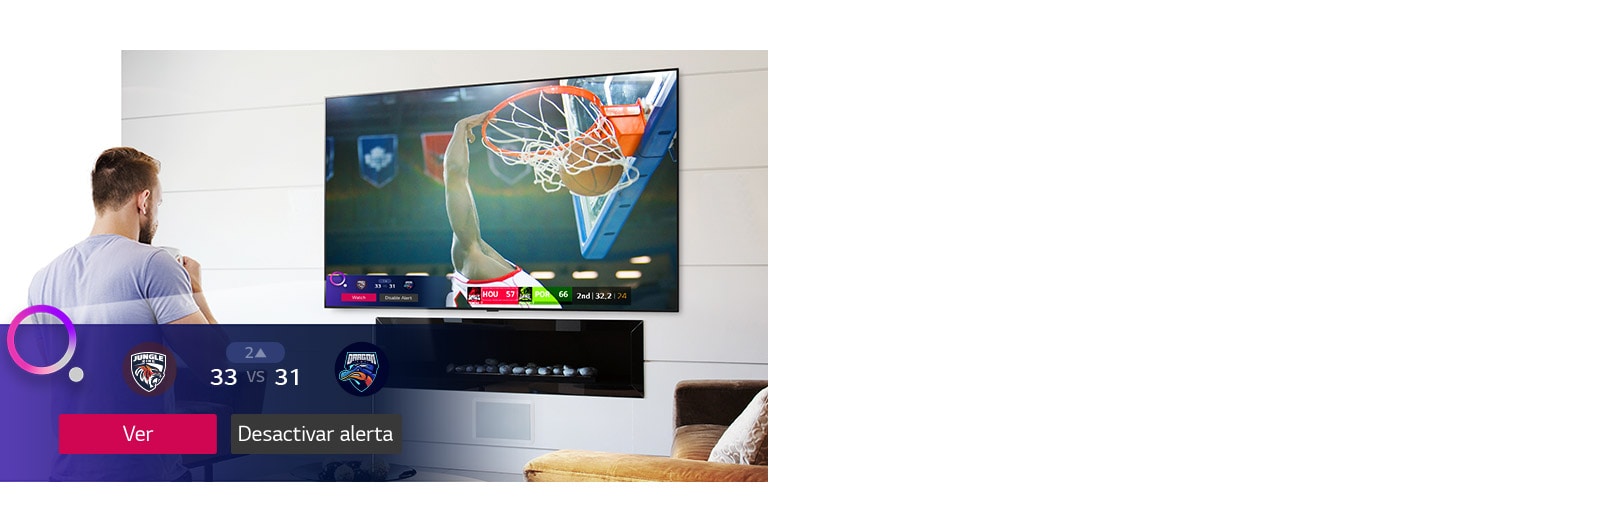 La pantalla de TV muestra una escena de un partido de baloncesto con una alerta de deportes